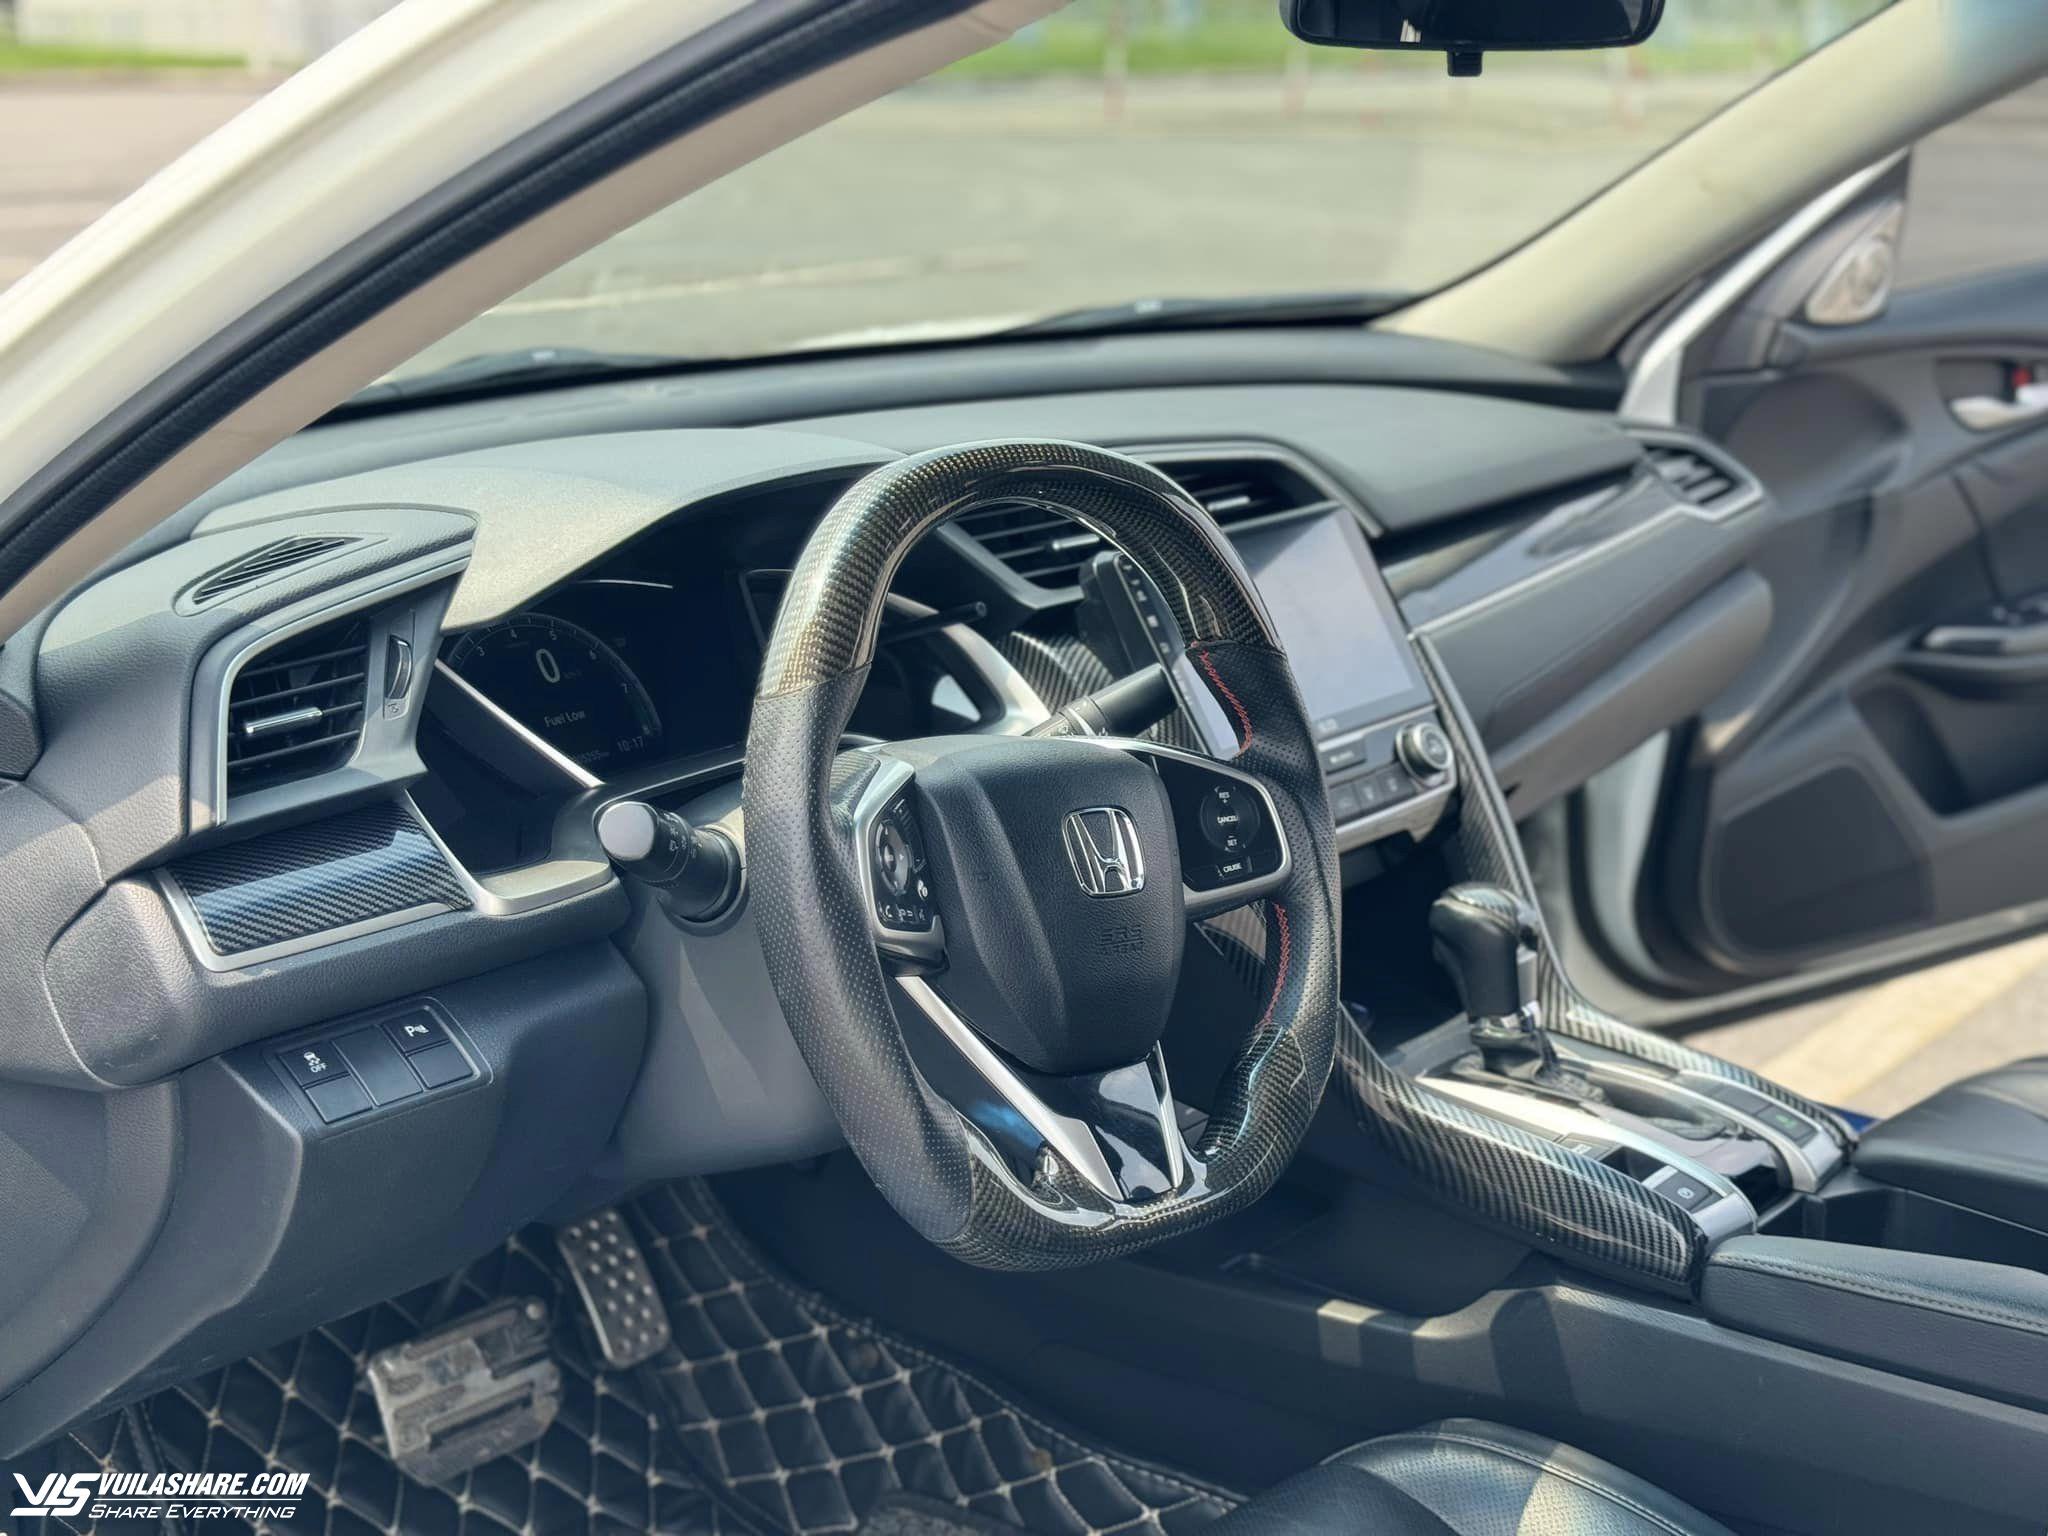 Honda Civic đã qua sử dụng 7 năm giá ngang xe mới Hyundai Accent bản số sàn- Ảnh 3.